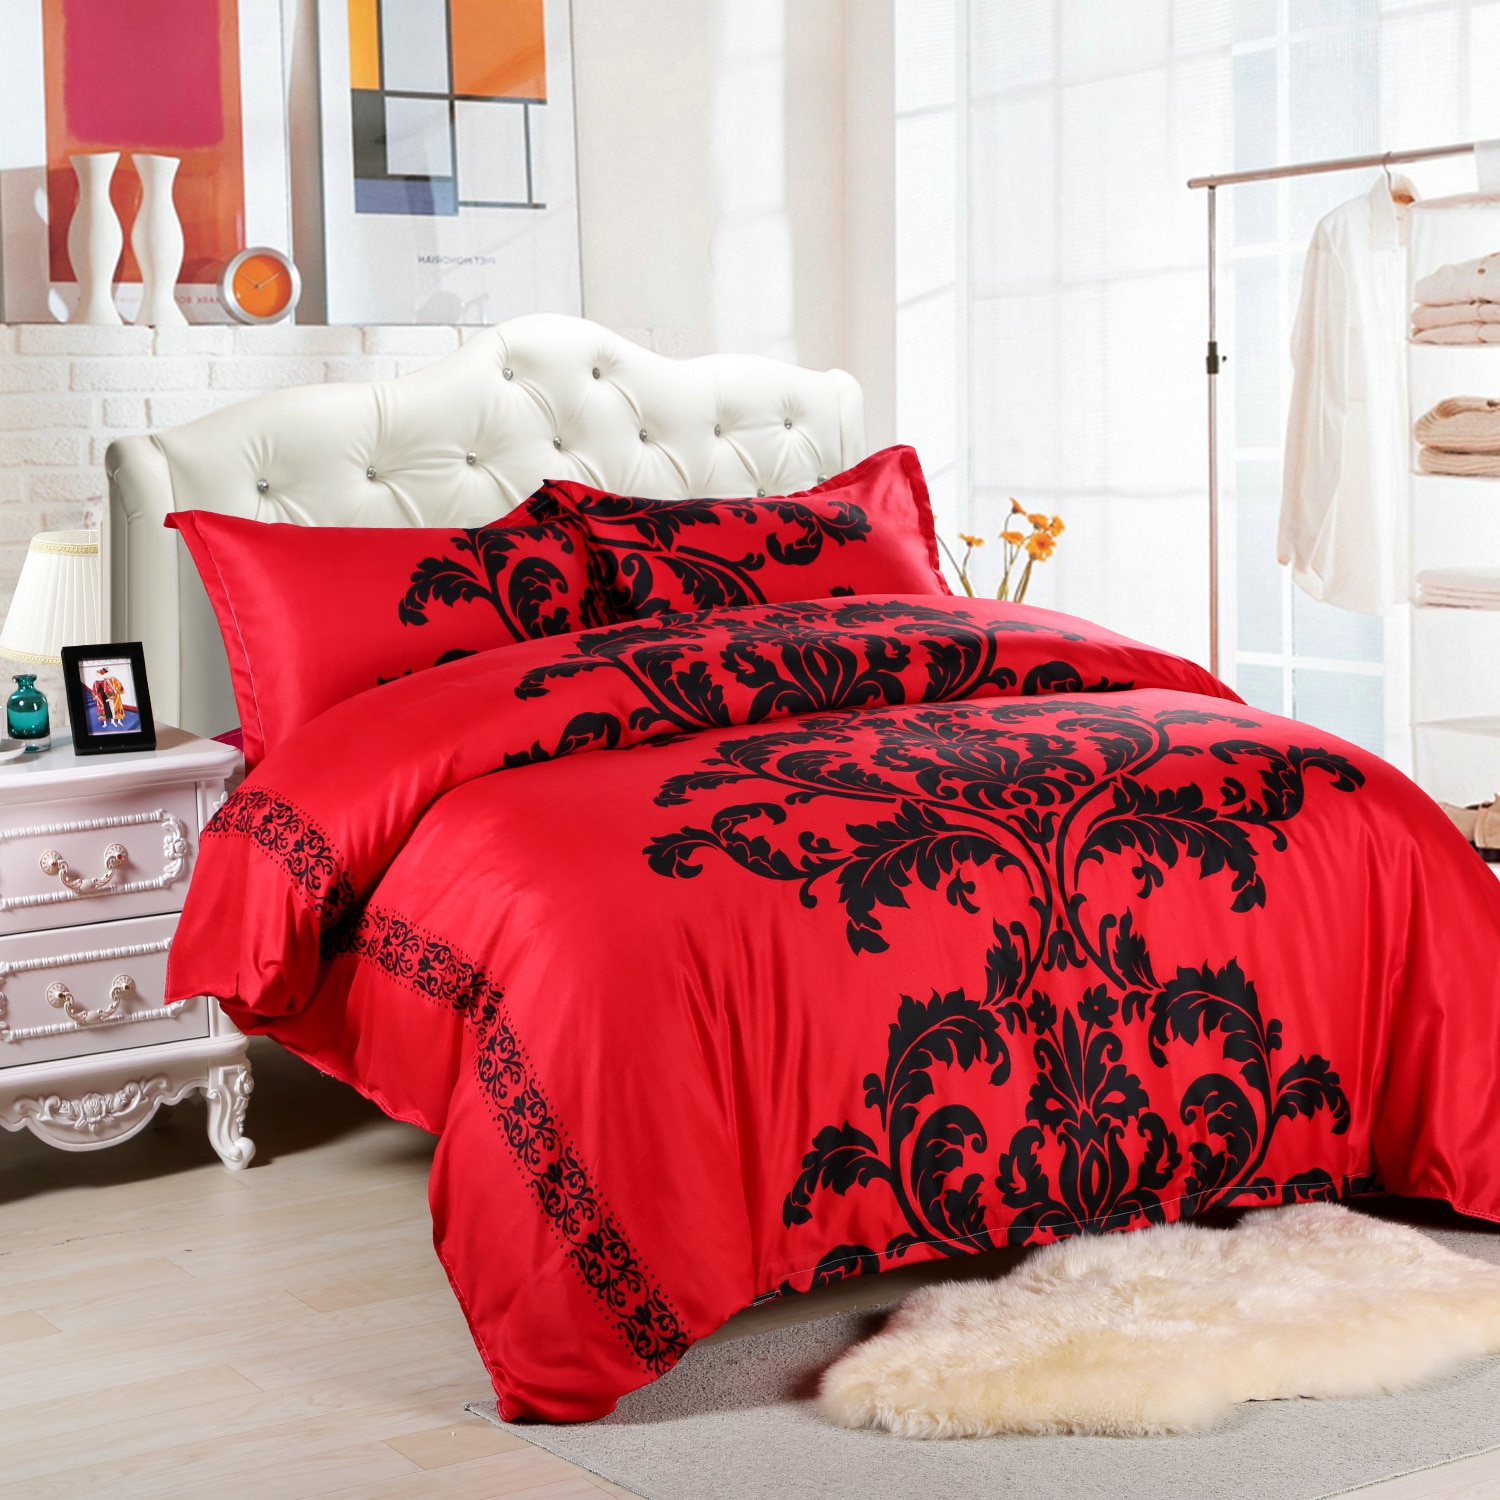 Aggcual Rode En Zwarte Bloemen Bed Set Luxe Paar 3d Printing Home Textiel Dekbedovertrek Bed Set Beddengoed kit Be35